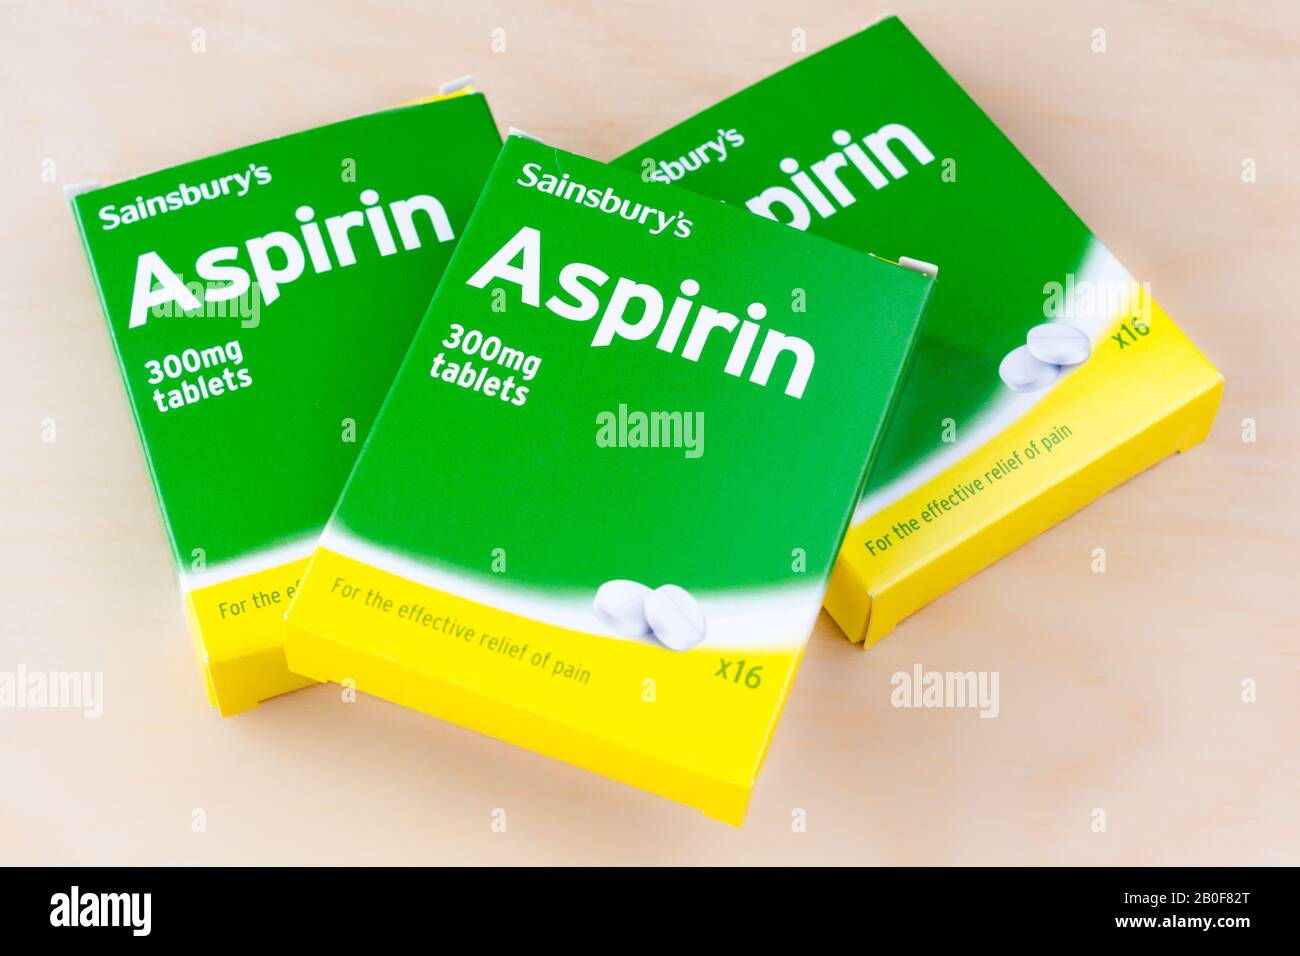 Fotografia di tre scatole da 16 tavolette Aspirin, il marchio di Sainsbury. Regno Unito Foto Stock